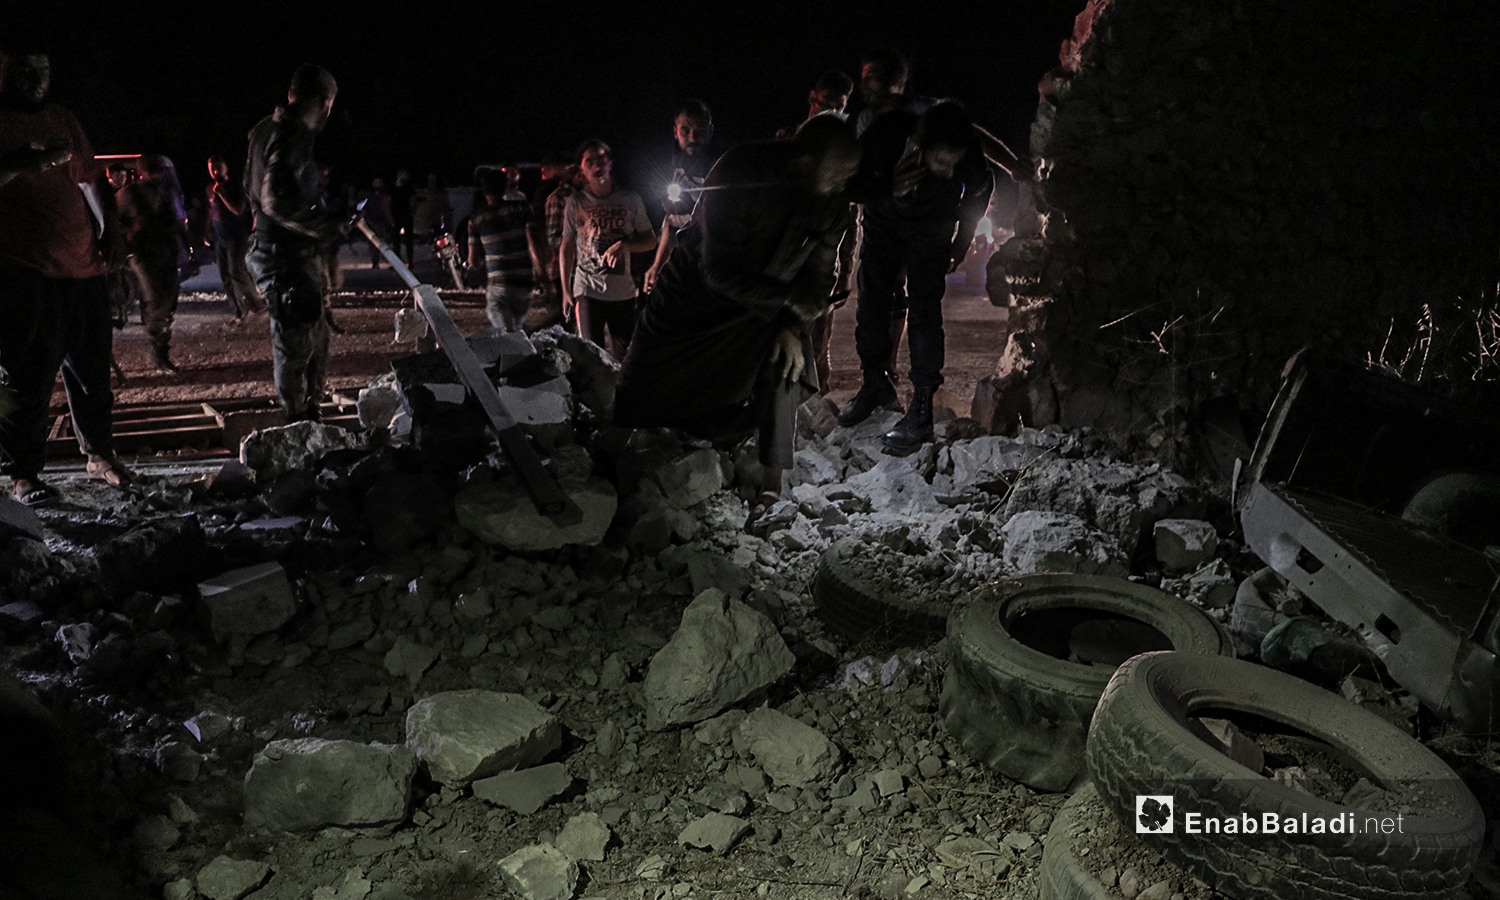 انفجار عبوة ناسفة في إحدى الأراضي الزراعية على أطراف مدينة الباب في ريف حلب الشمالي الشرقي - 27 من تموز 2020 (عنب بلدي / عاصم الملحم )